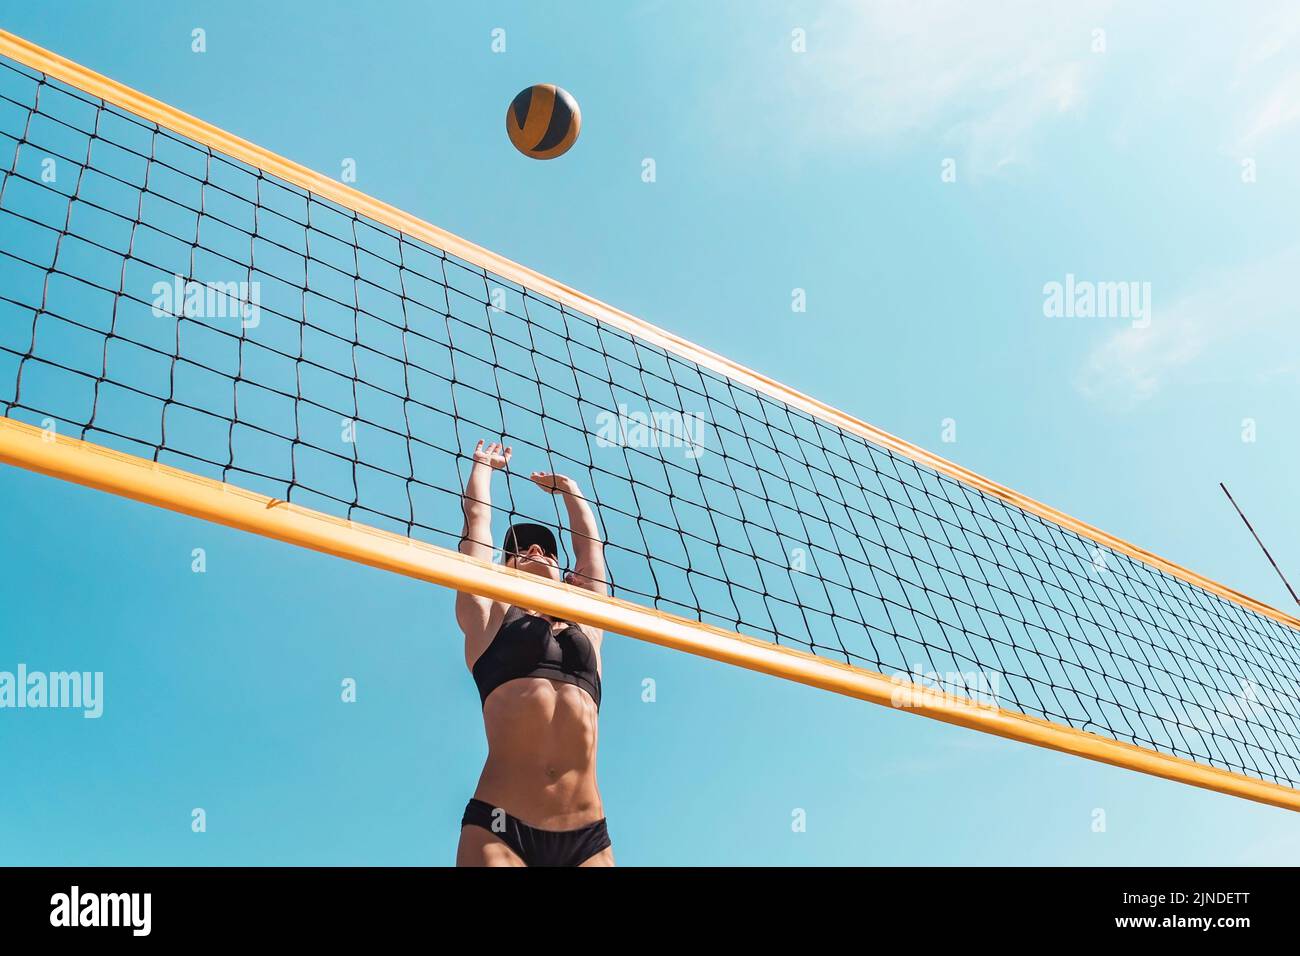 Adolescente jugando voleibol de playa. Campeonato de voleibol de playa. La mujer llega a la pelota, arrojar un amarillo a través de la red de voleibol. Victo Foto de stock